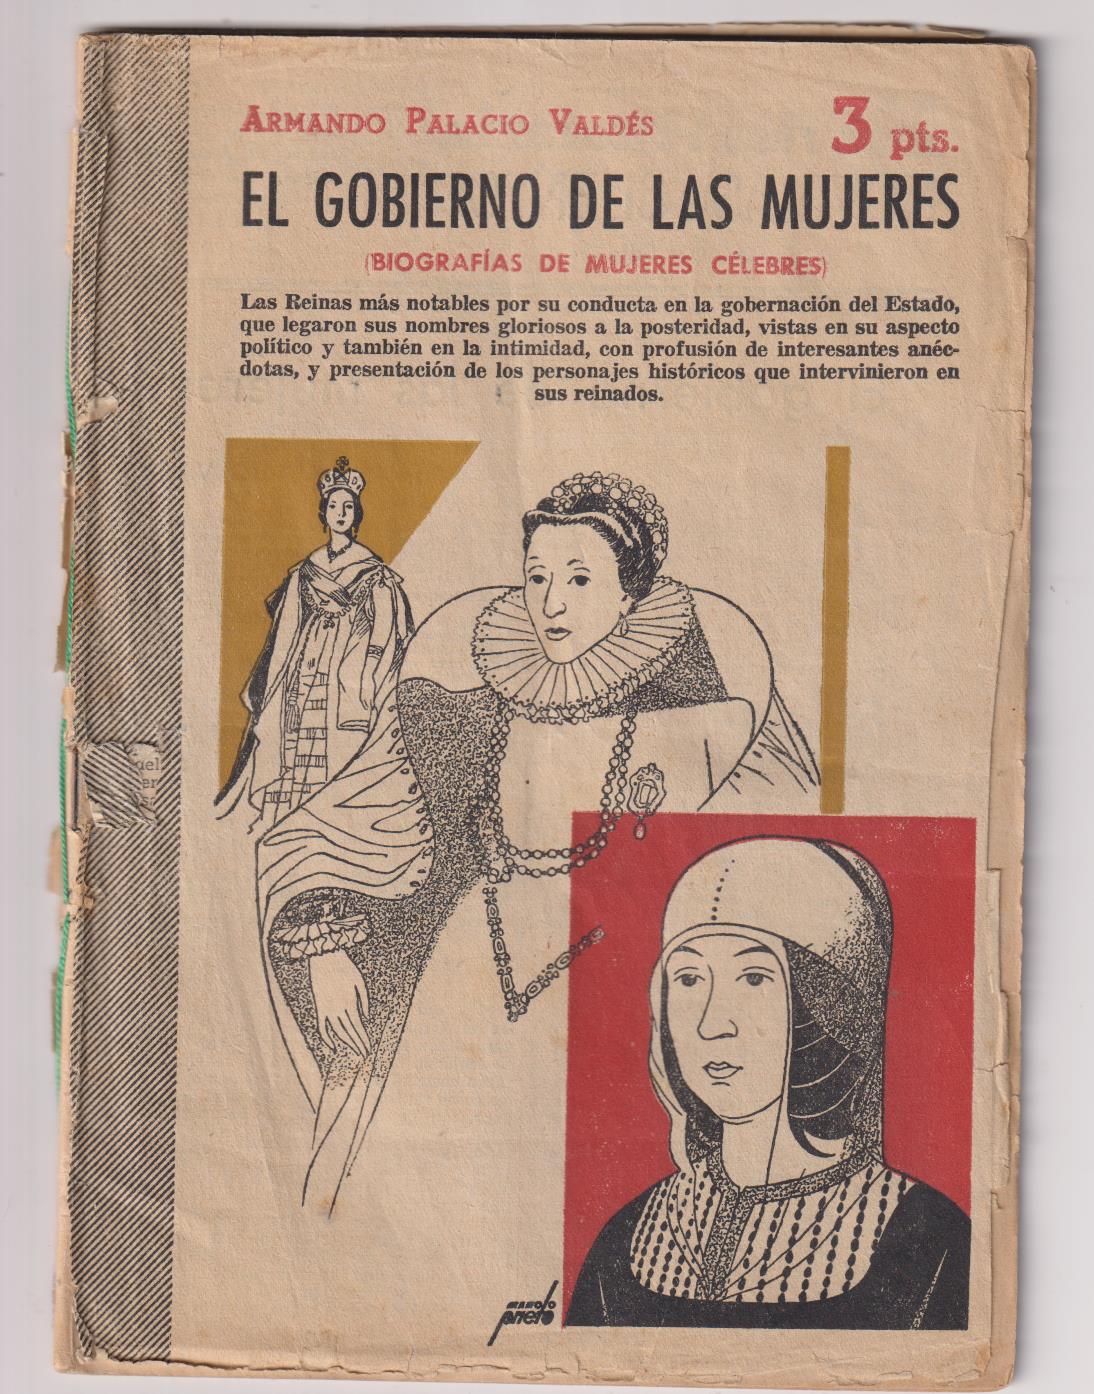 Revista Literaria Novelas y cuentos nº 1270. El Gobierno de las mujeres por A. Palacio Valdés